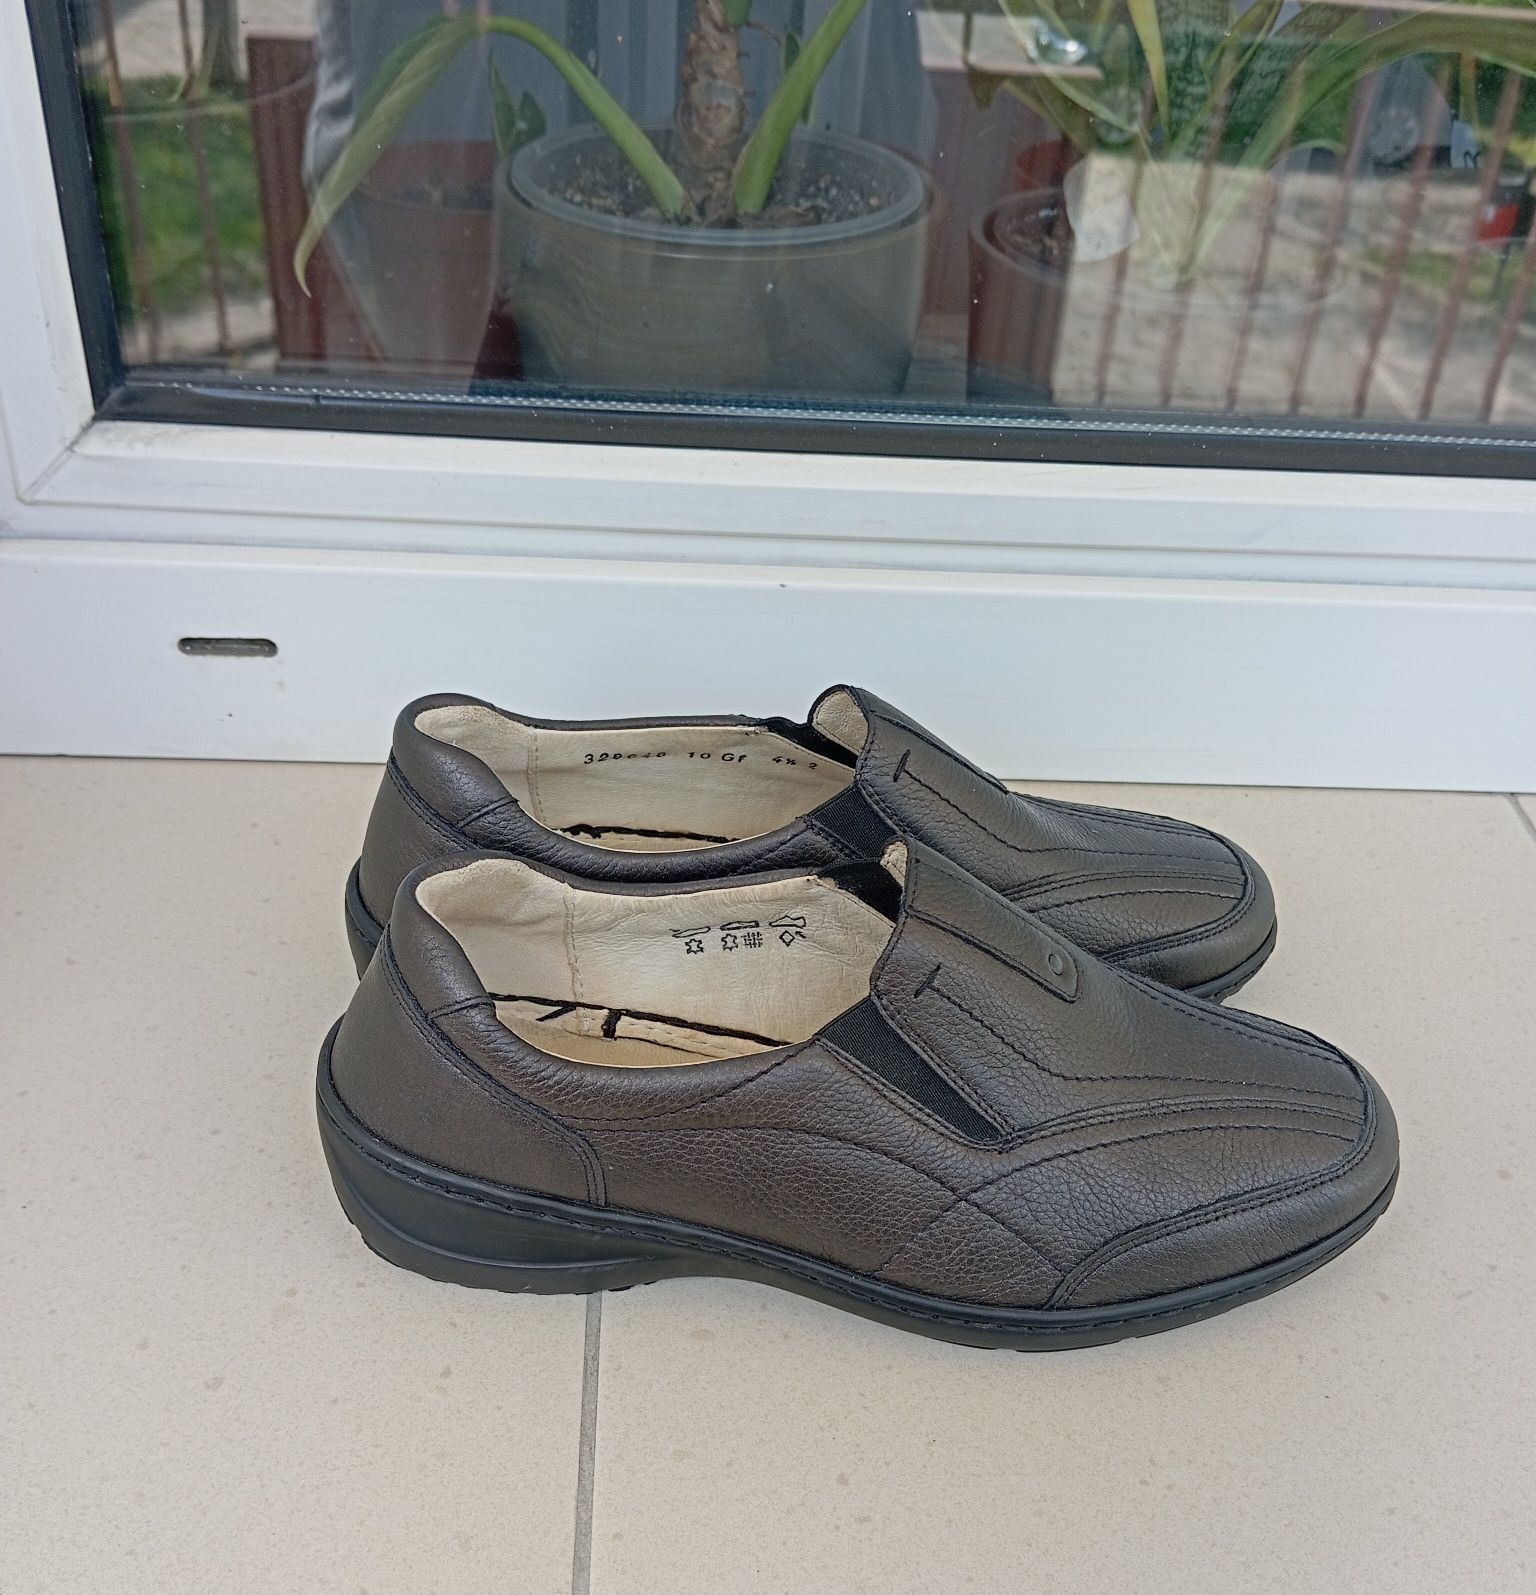 Czarne skórzane buty Waldlaufer, rozmiar 4,5 (37,5)